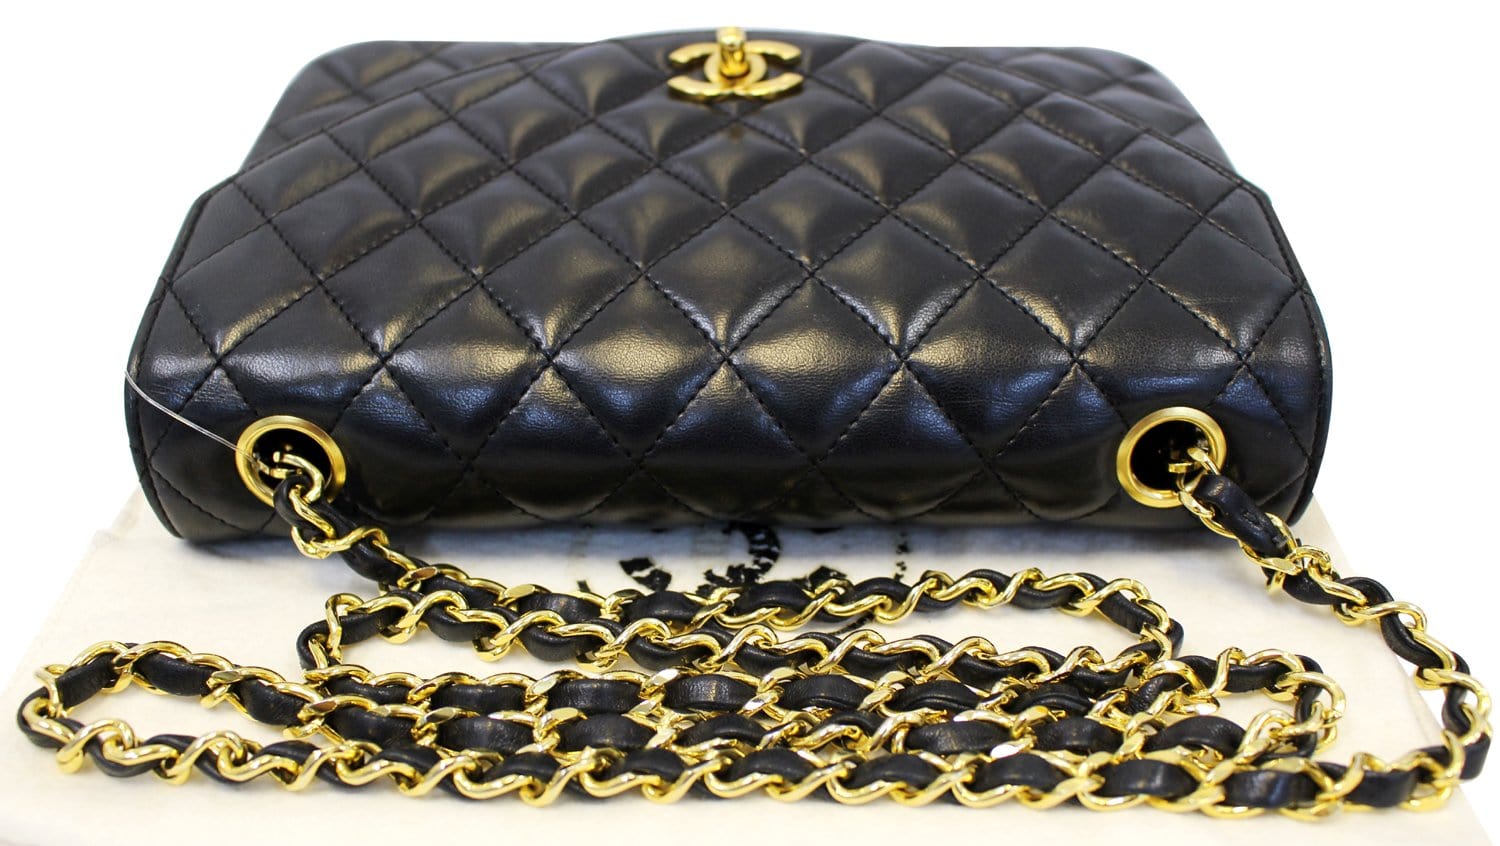 Chanel 9 Black Quilted Leather Shoulder Classic Flap Bag Vintage